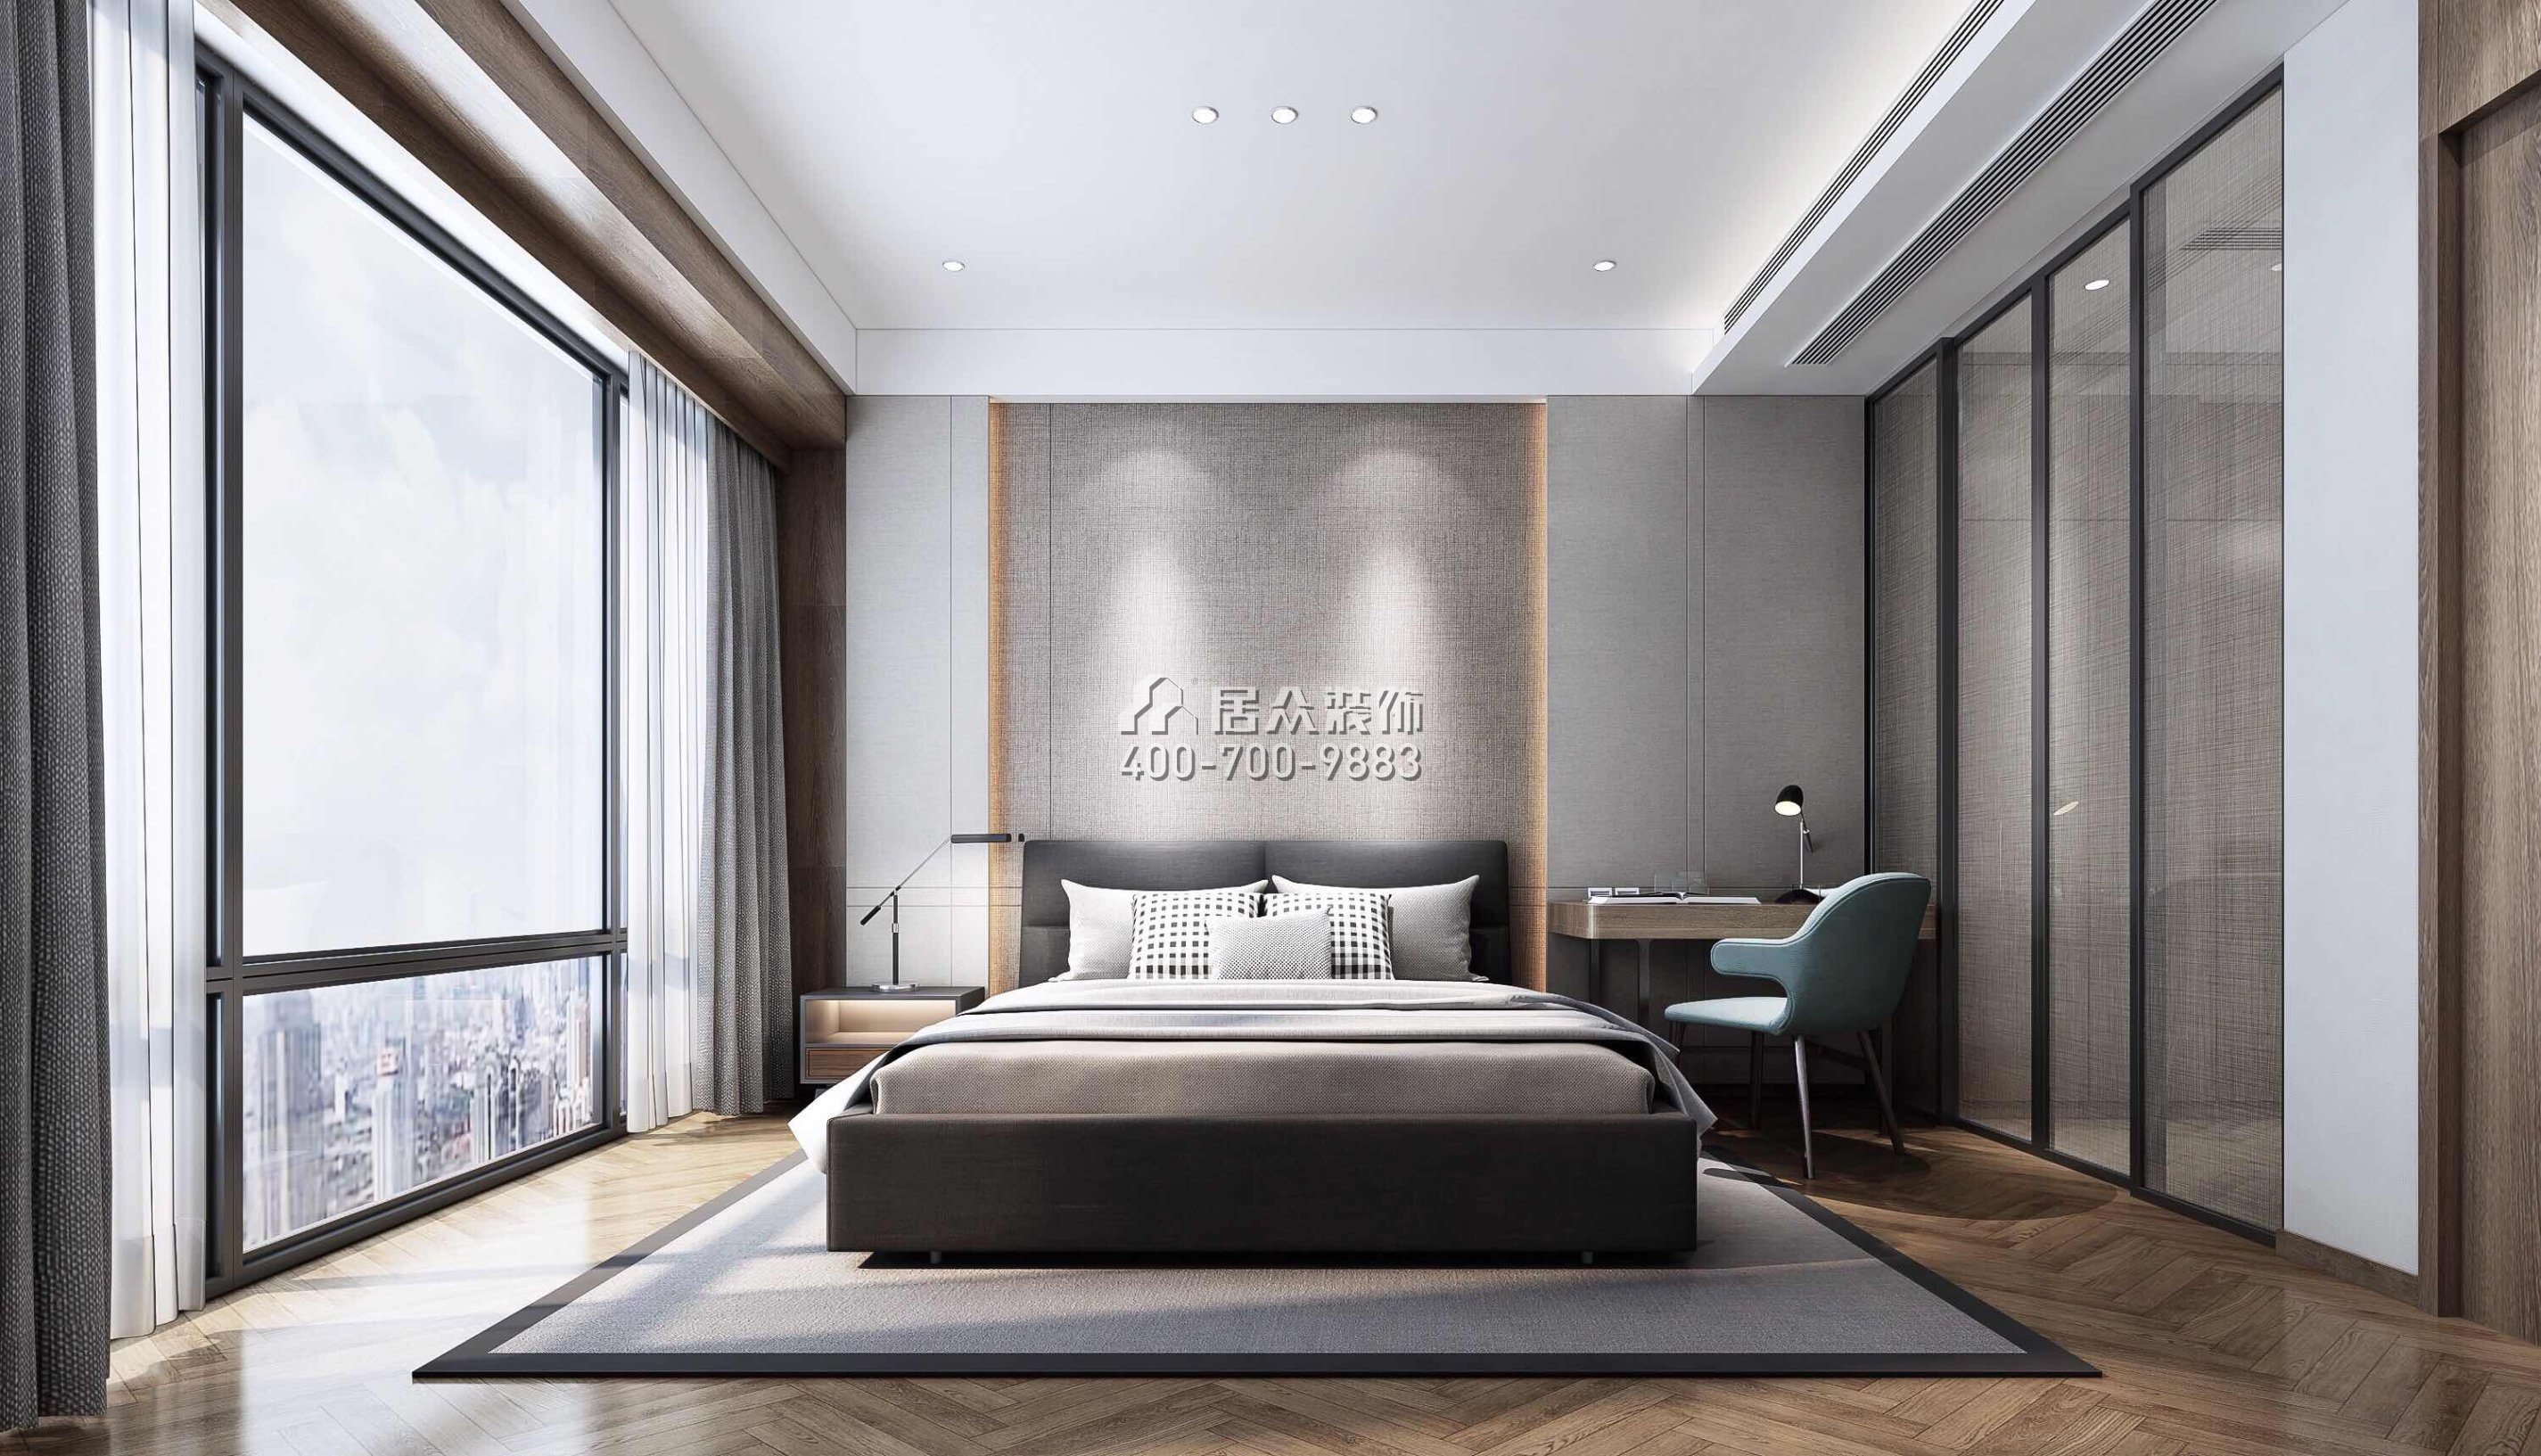 天鹅湖花园二期130平方米现代简约风格平层户型卧室装修效果图